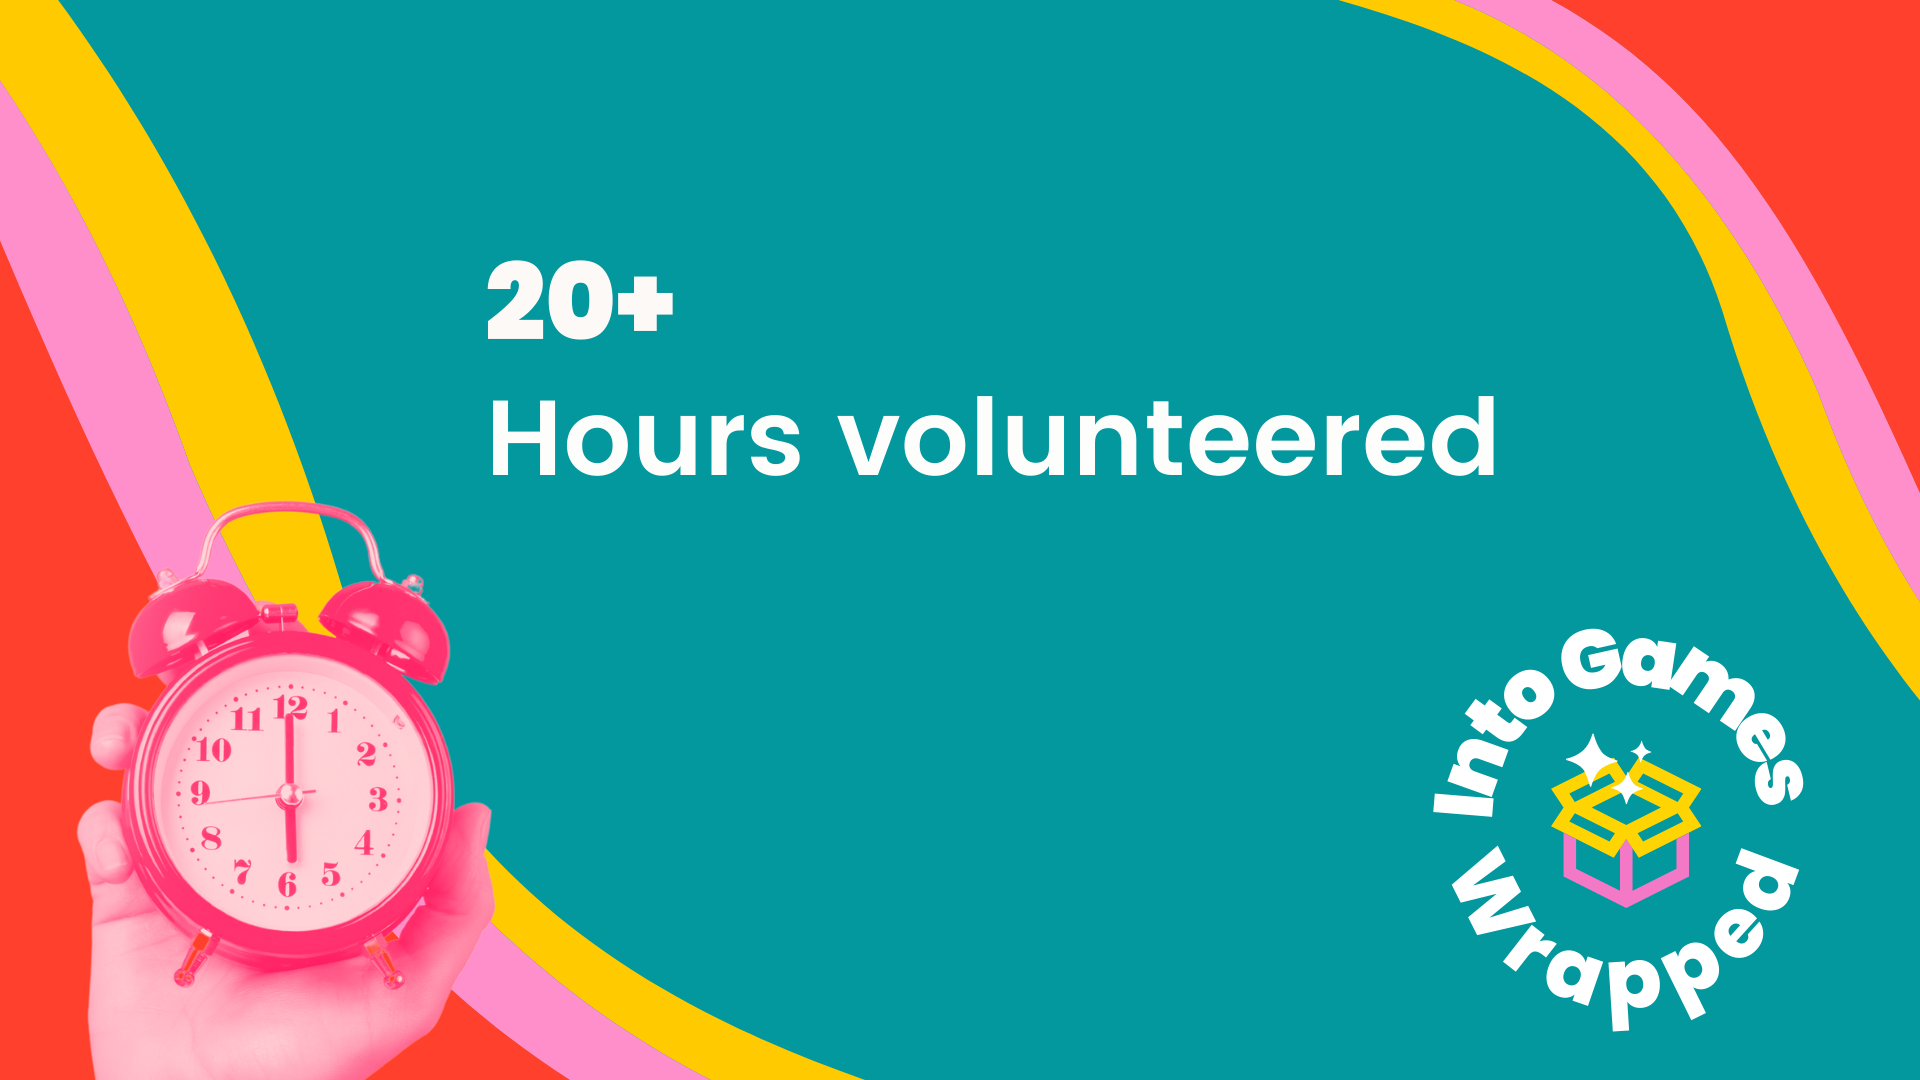 20+ hours volunteered